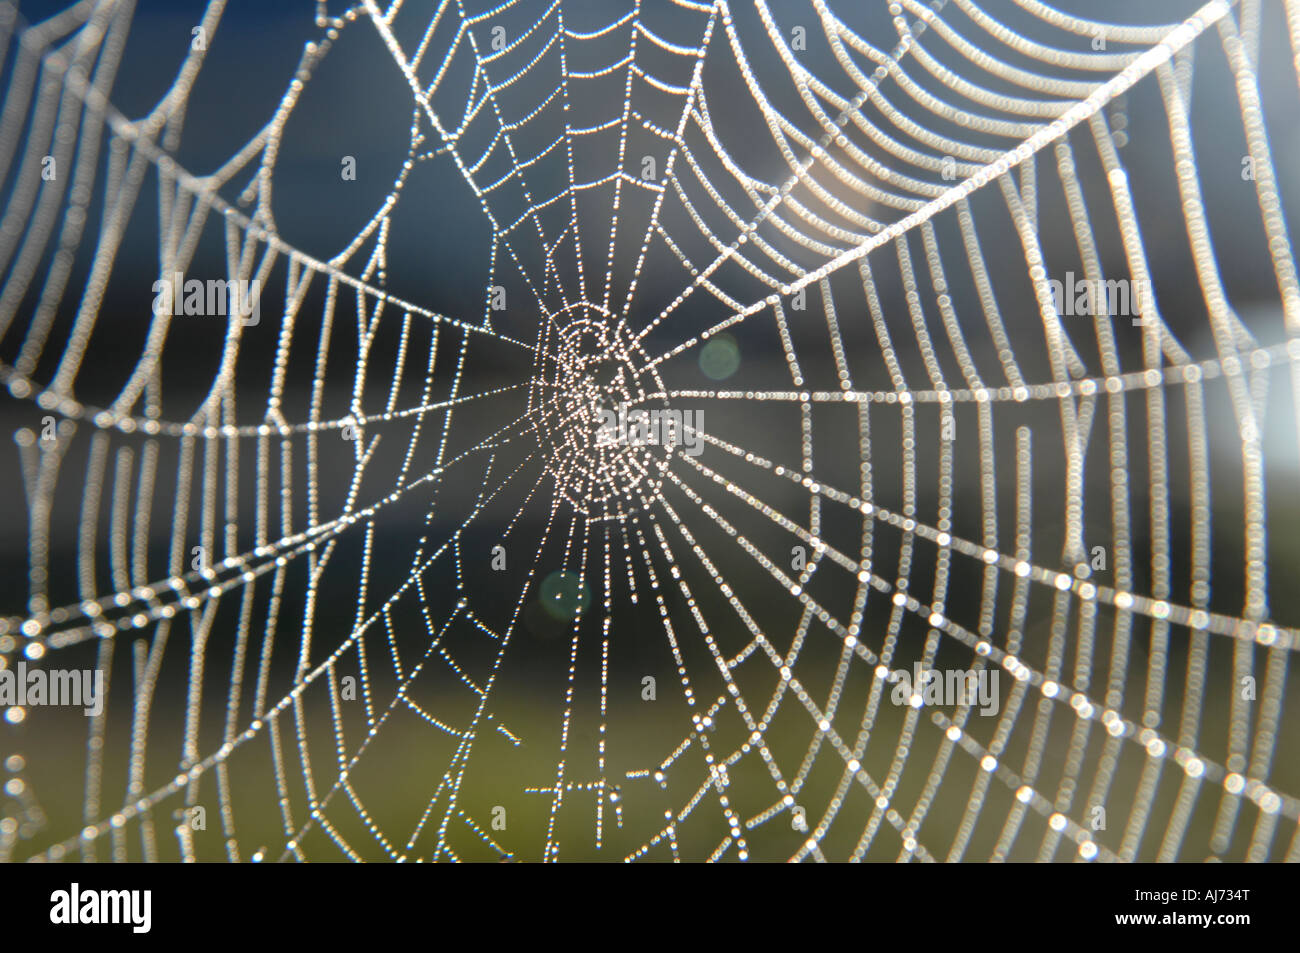 Spider 's web Stock Photo